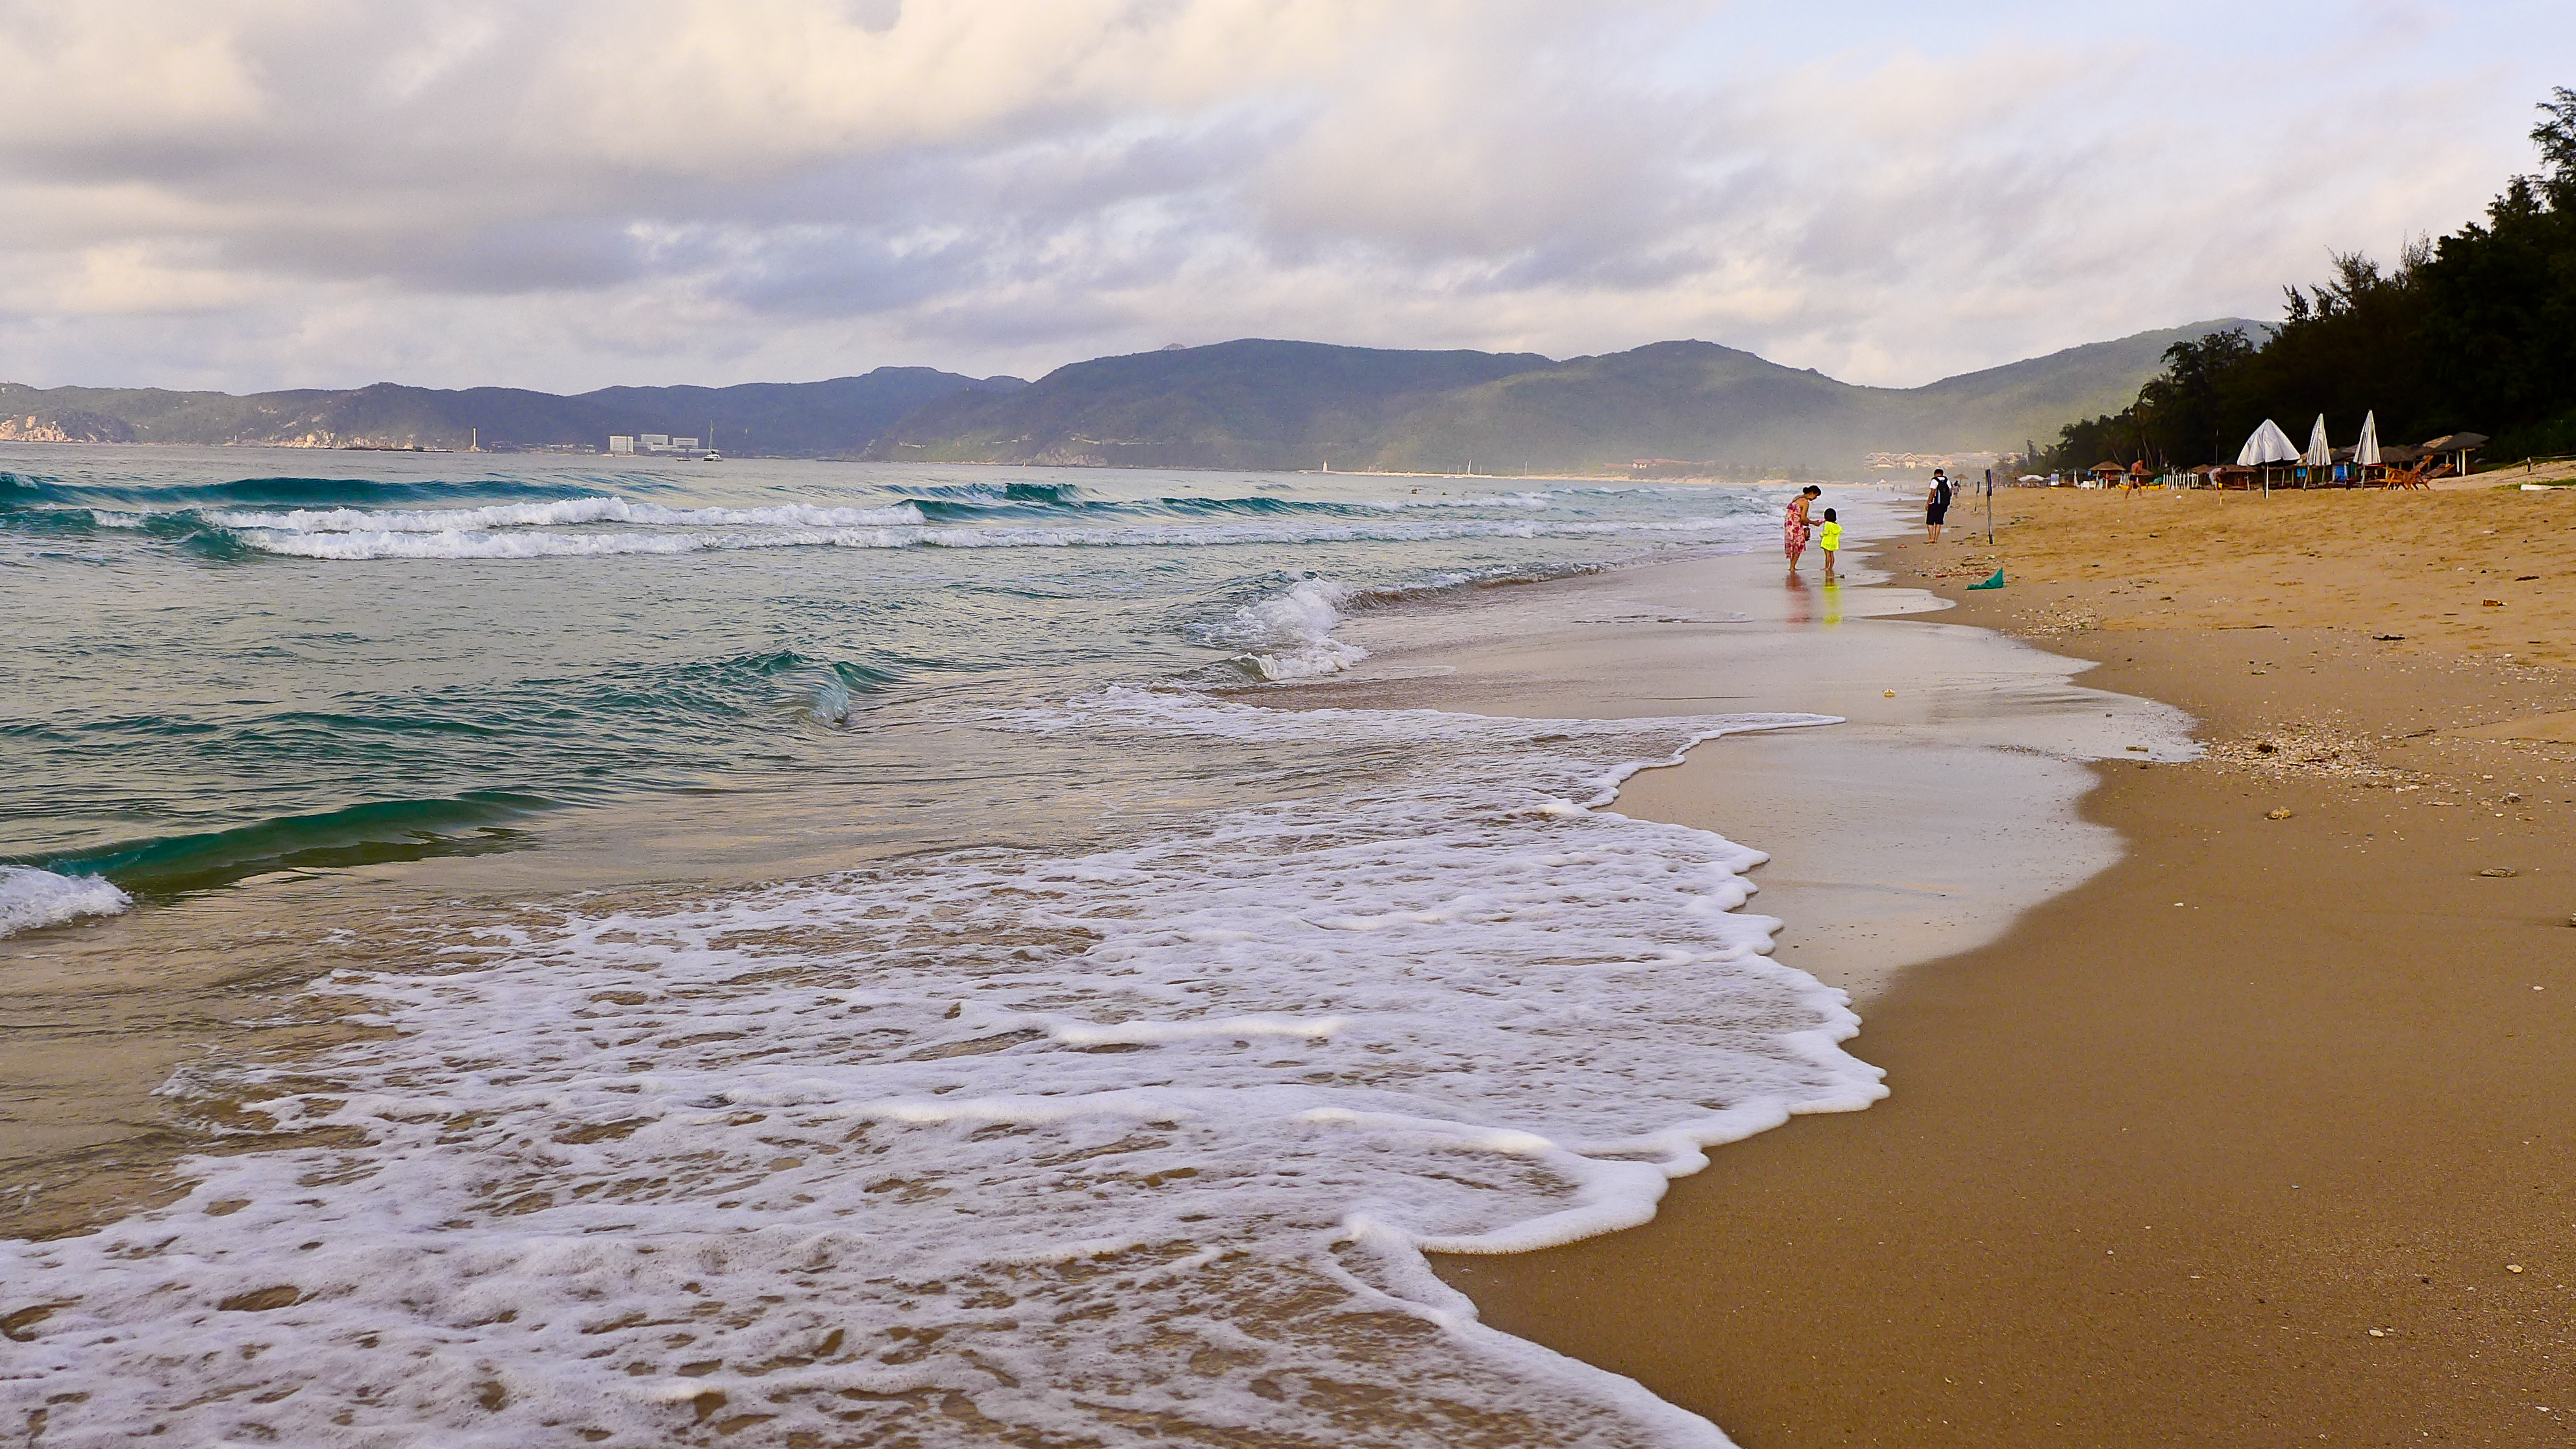 亚龙湾集中了现代旅游五大要素:海洋,沙滩,阳光,绿色,新鲜空气于一体